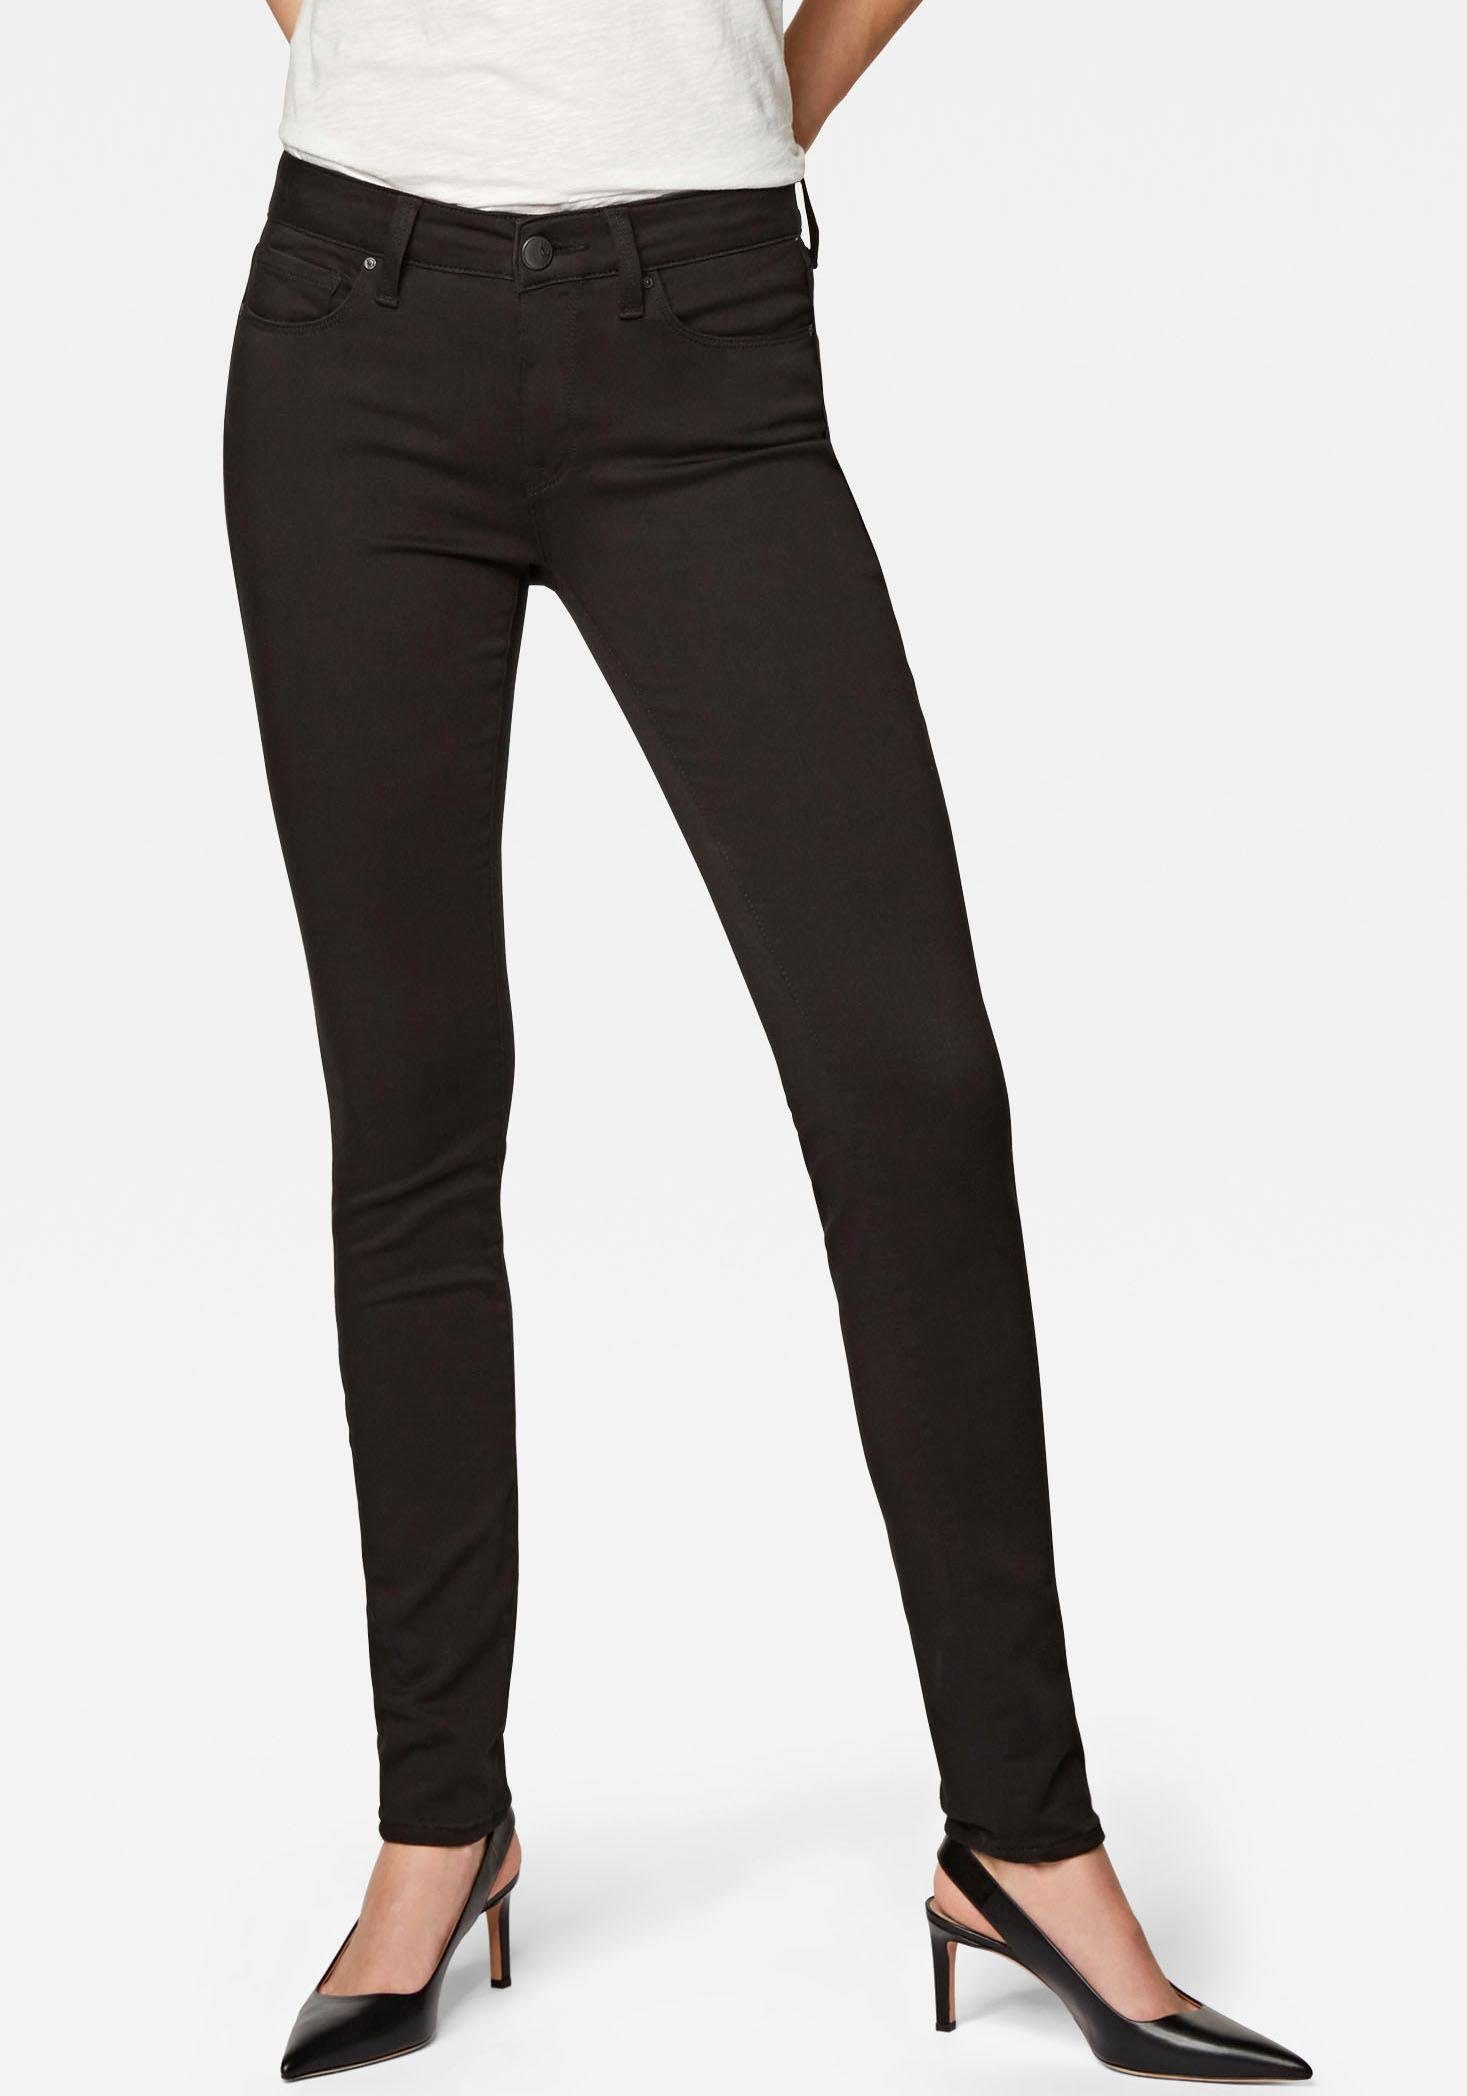 Mavi Damen ADRIANA Skinny Jeans, Schwarz (Double Black STR 14500), W25/L30 (Herstellergröße: 25/30)